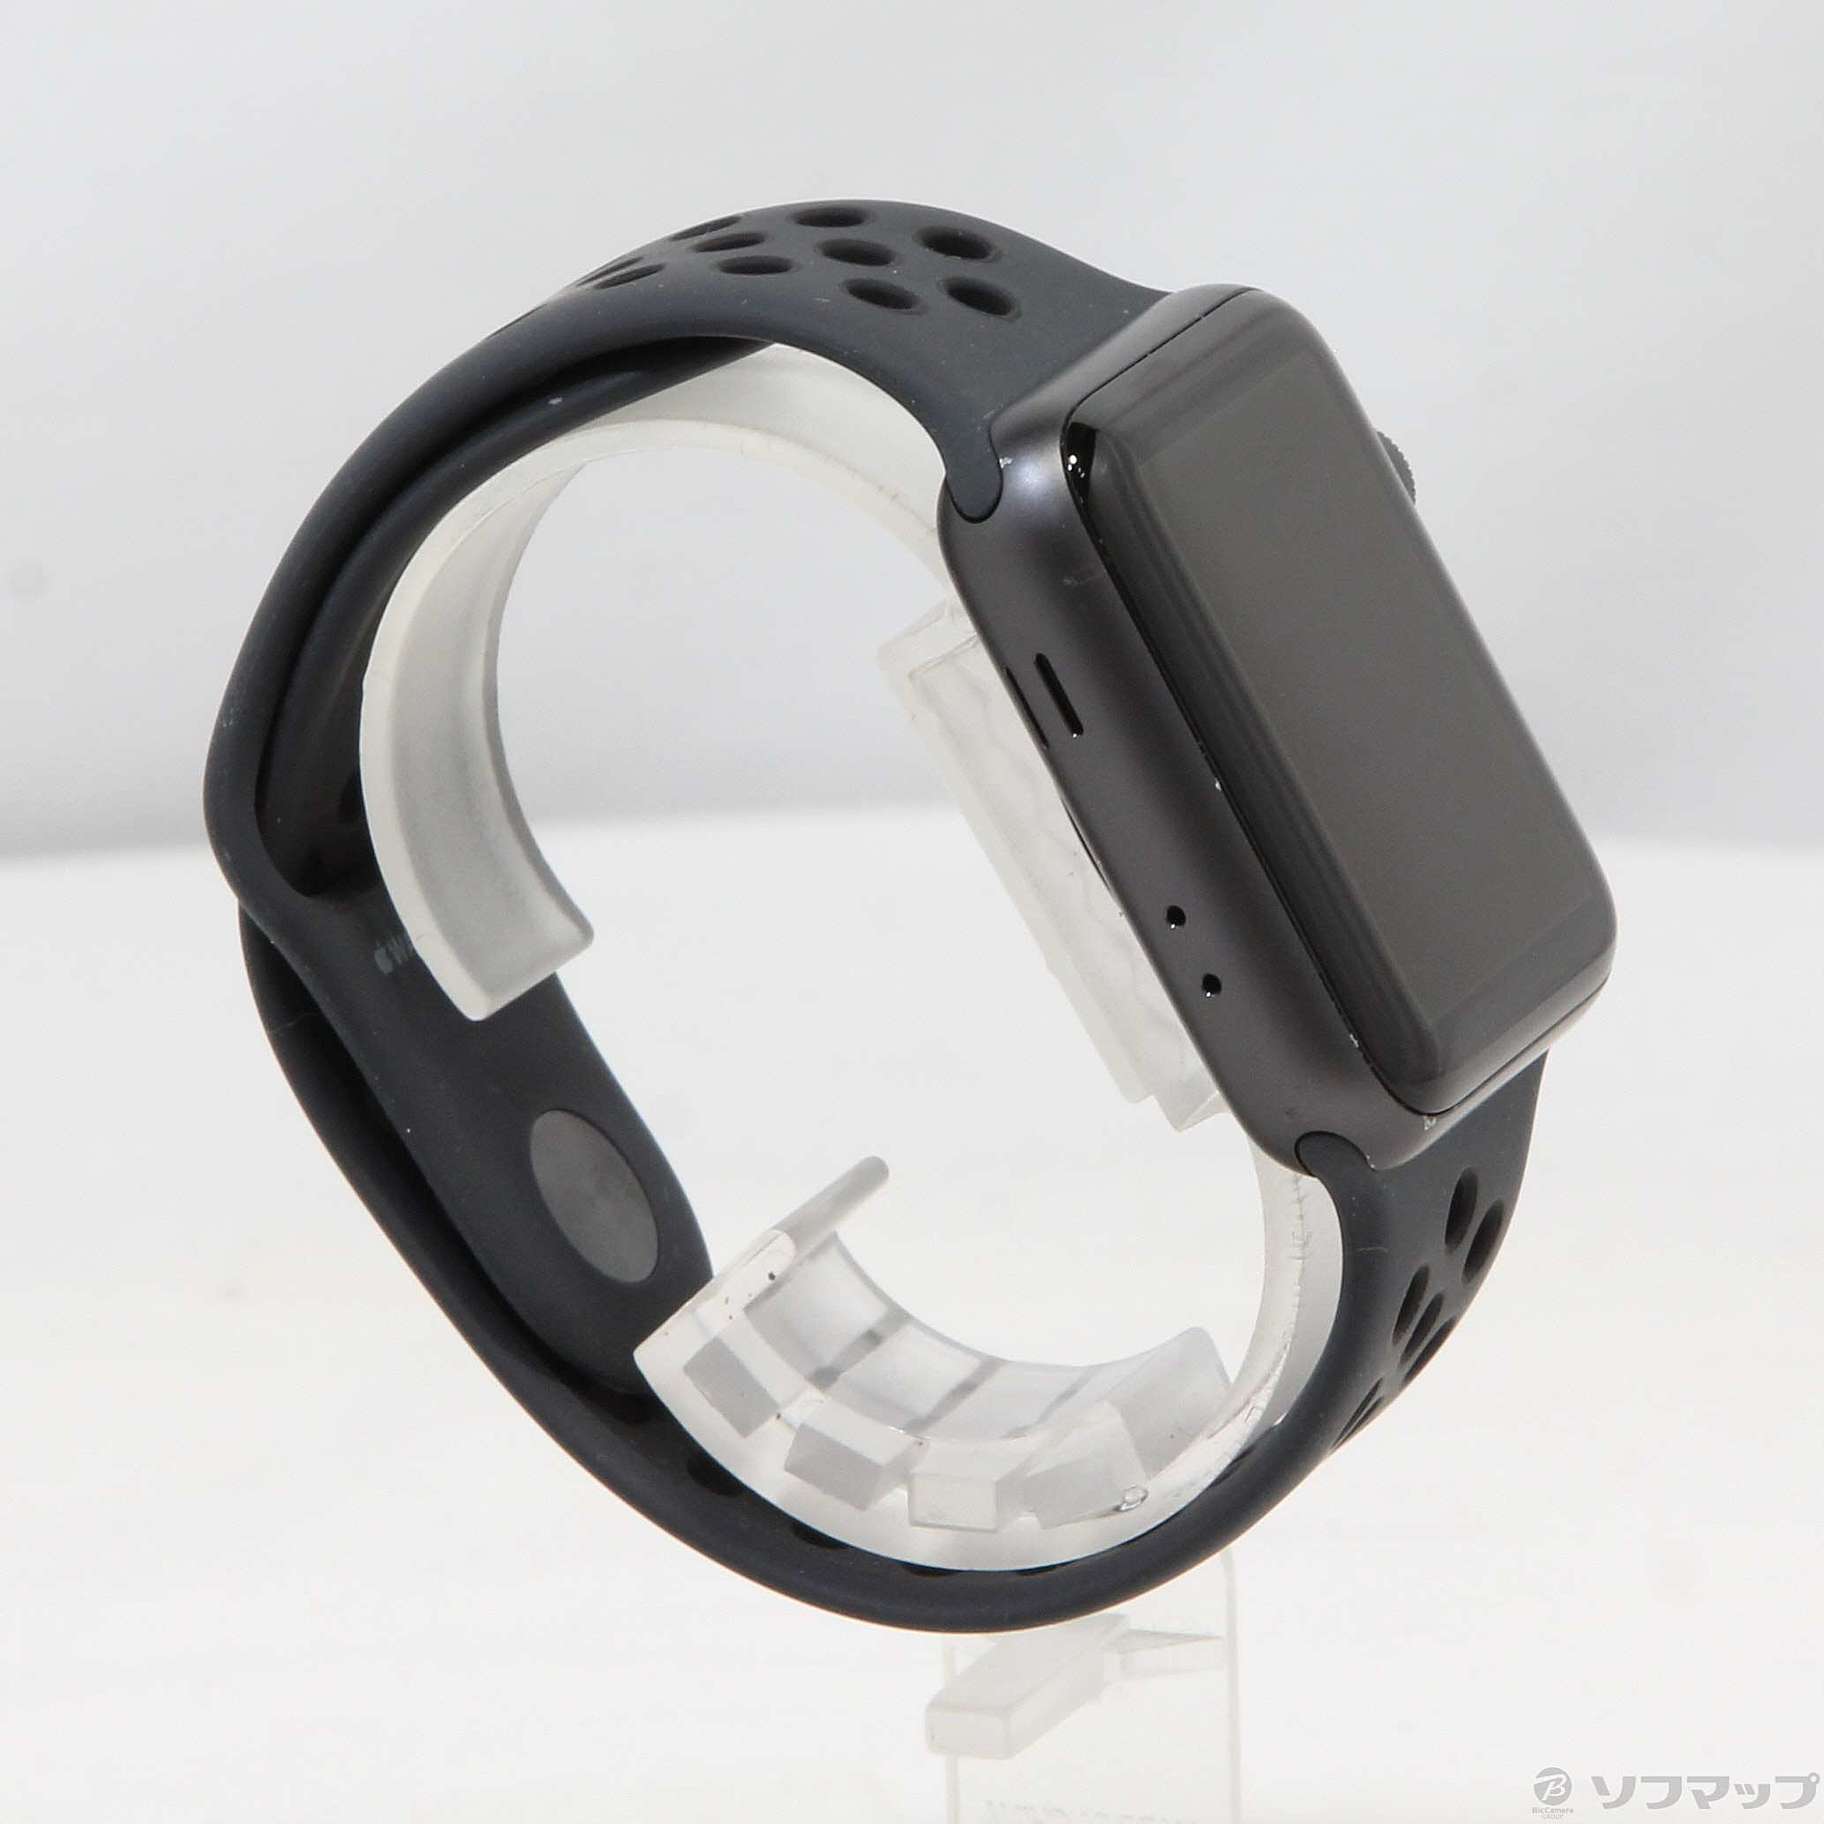 中古品〕 Apple Watch Series 3 Nike+ GPS 42mm スペースグレイ